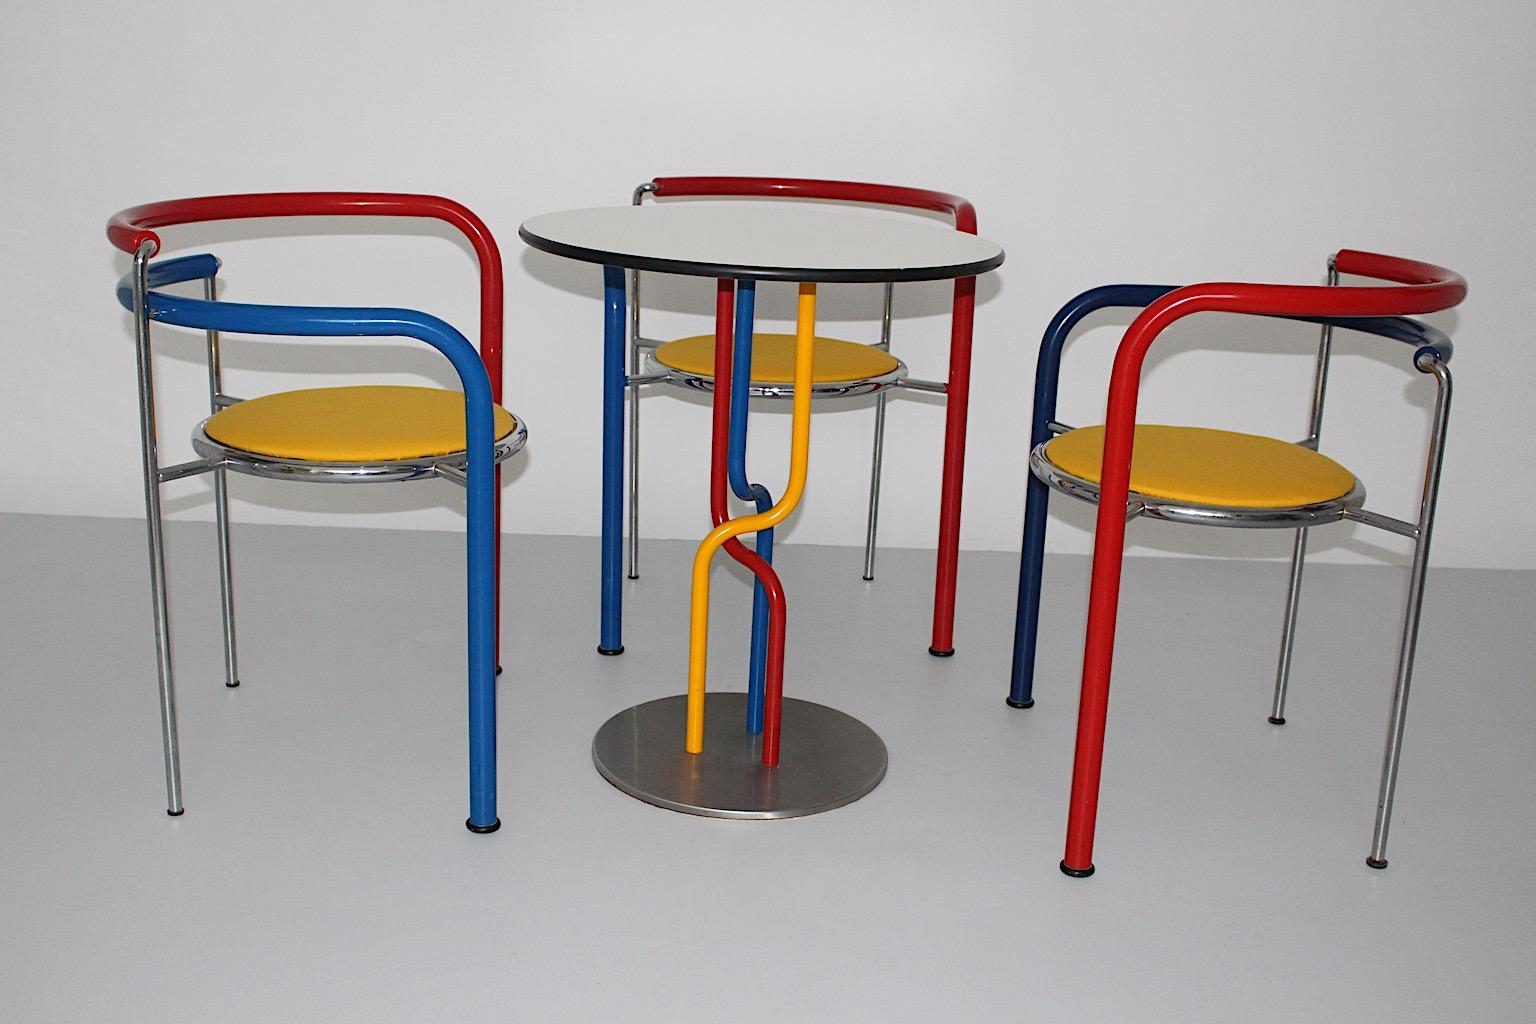 Pop Art  multicolore vintage three ( 3 )  chaises de salle à manger avec une ( 1 ) table  Modèle Dark Horse conçu par Rud Thygesen & Johnny Sorensen pour Botium, Danemark, vers 1989.
Un superbe ensemble de chaises et de table multicolores datant de